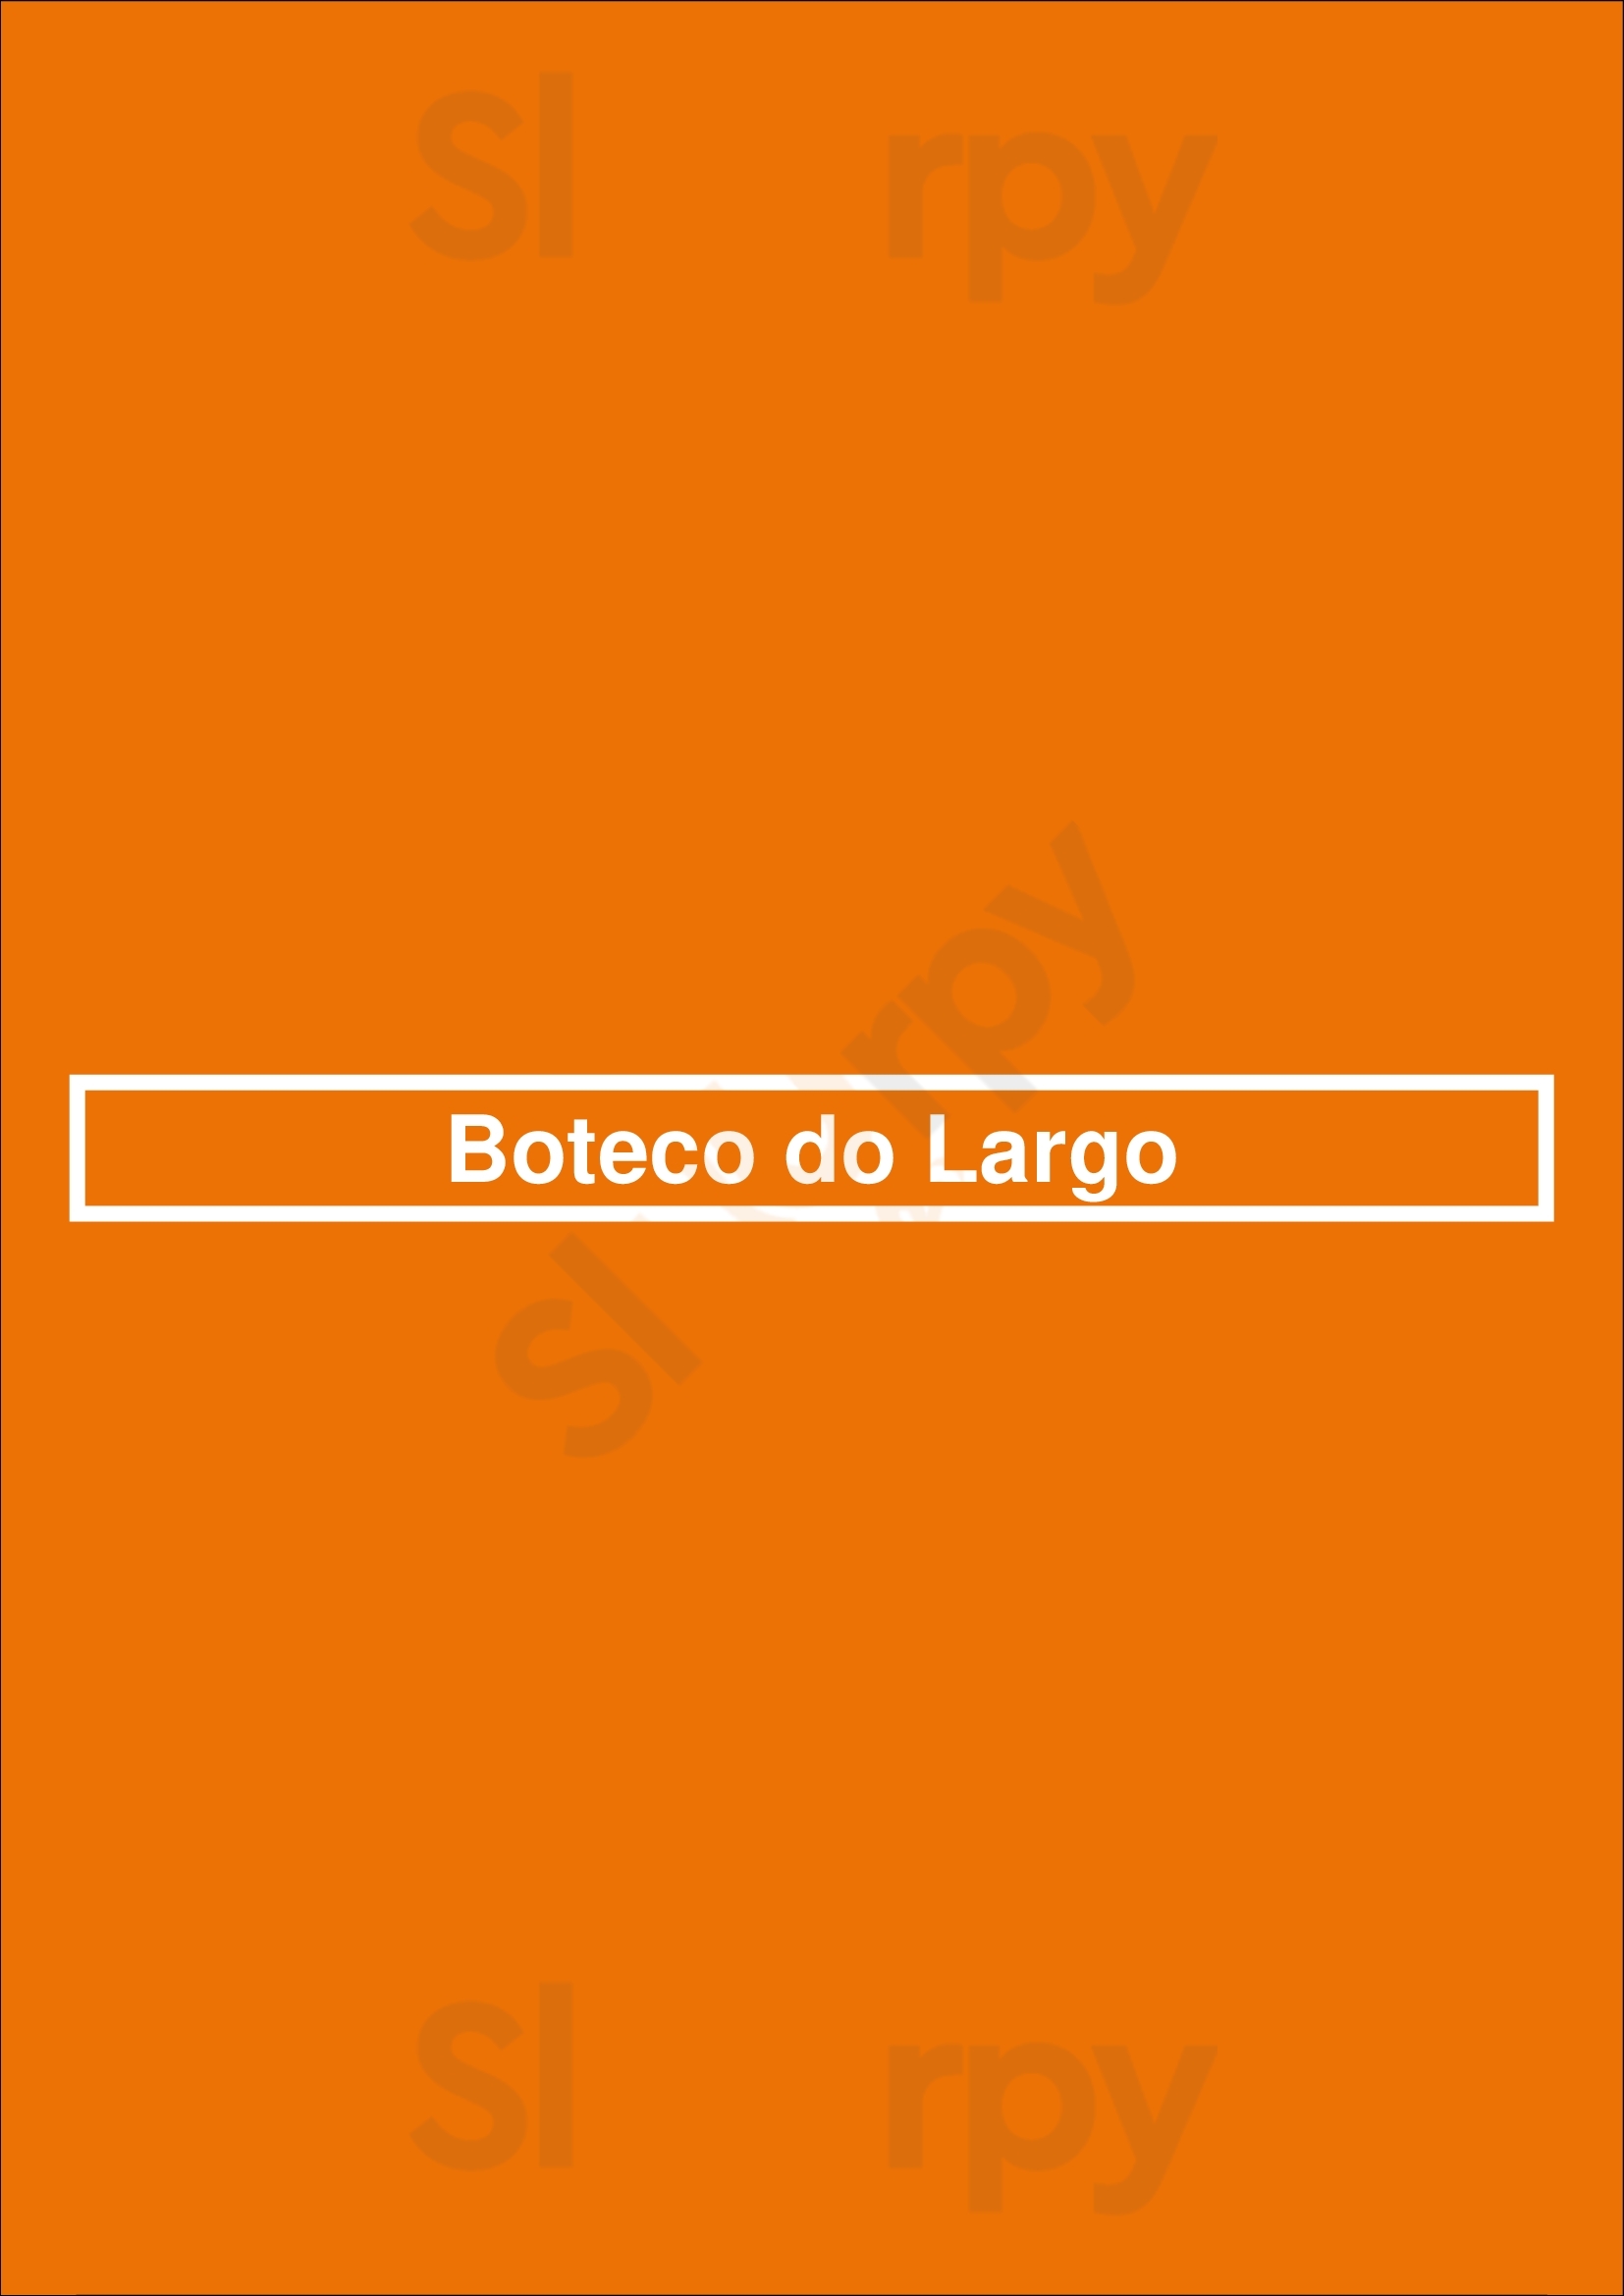 Boteco Do Largo Lisboa Menu - 1